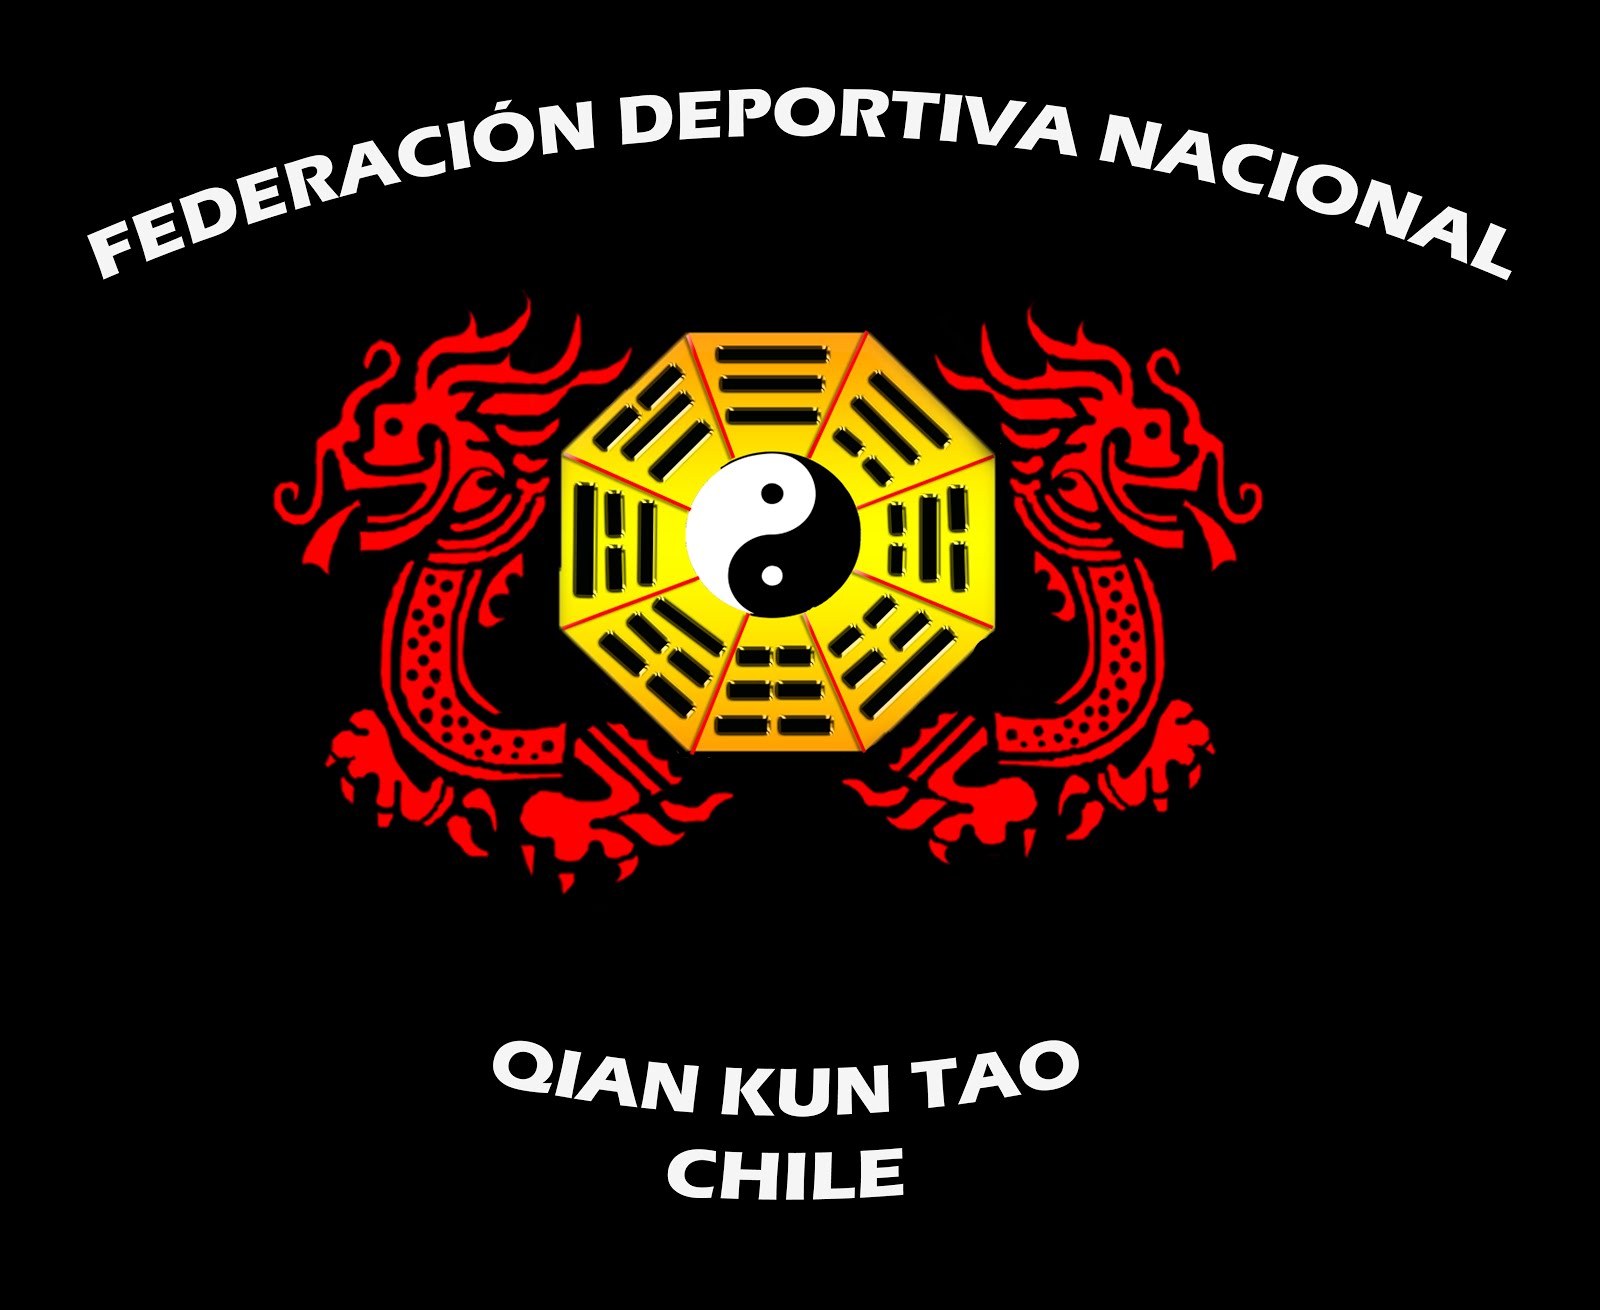 Federación Deportiva